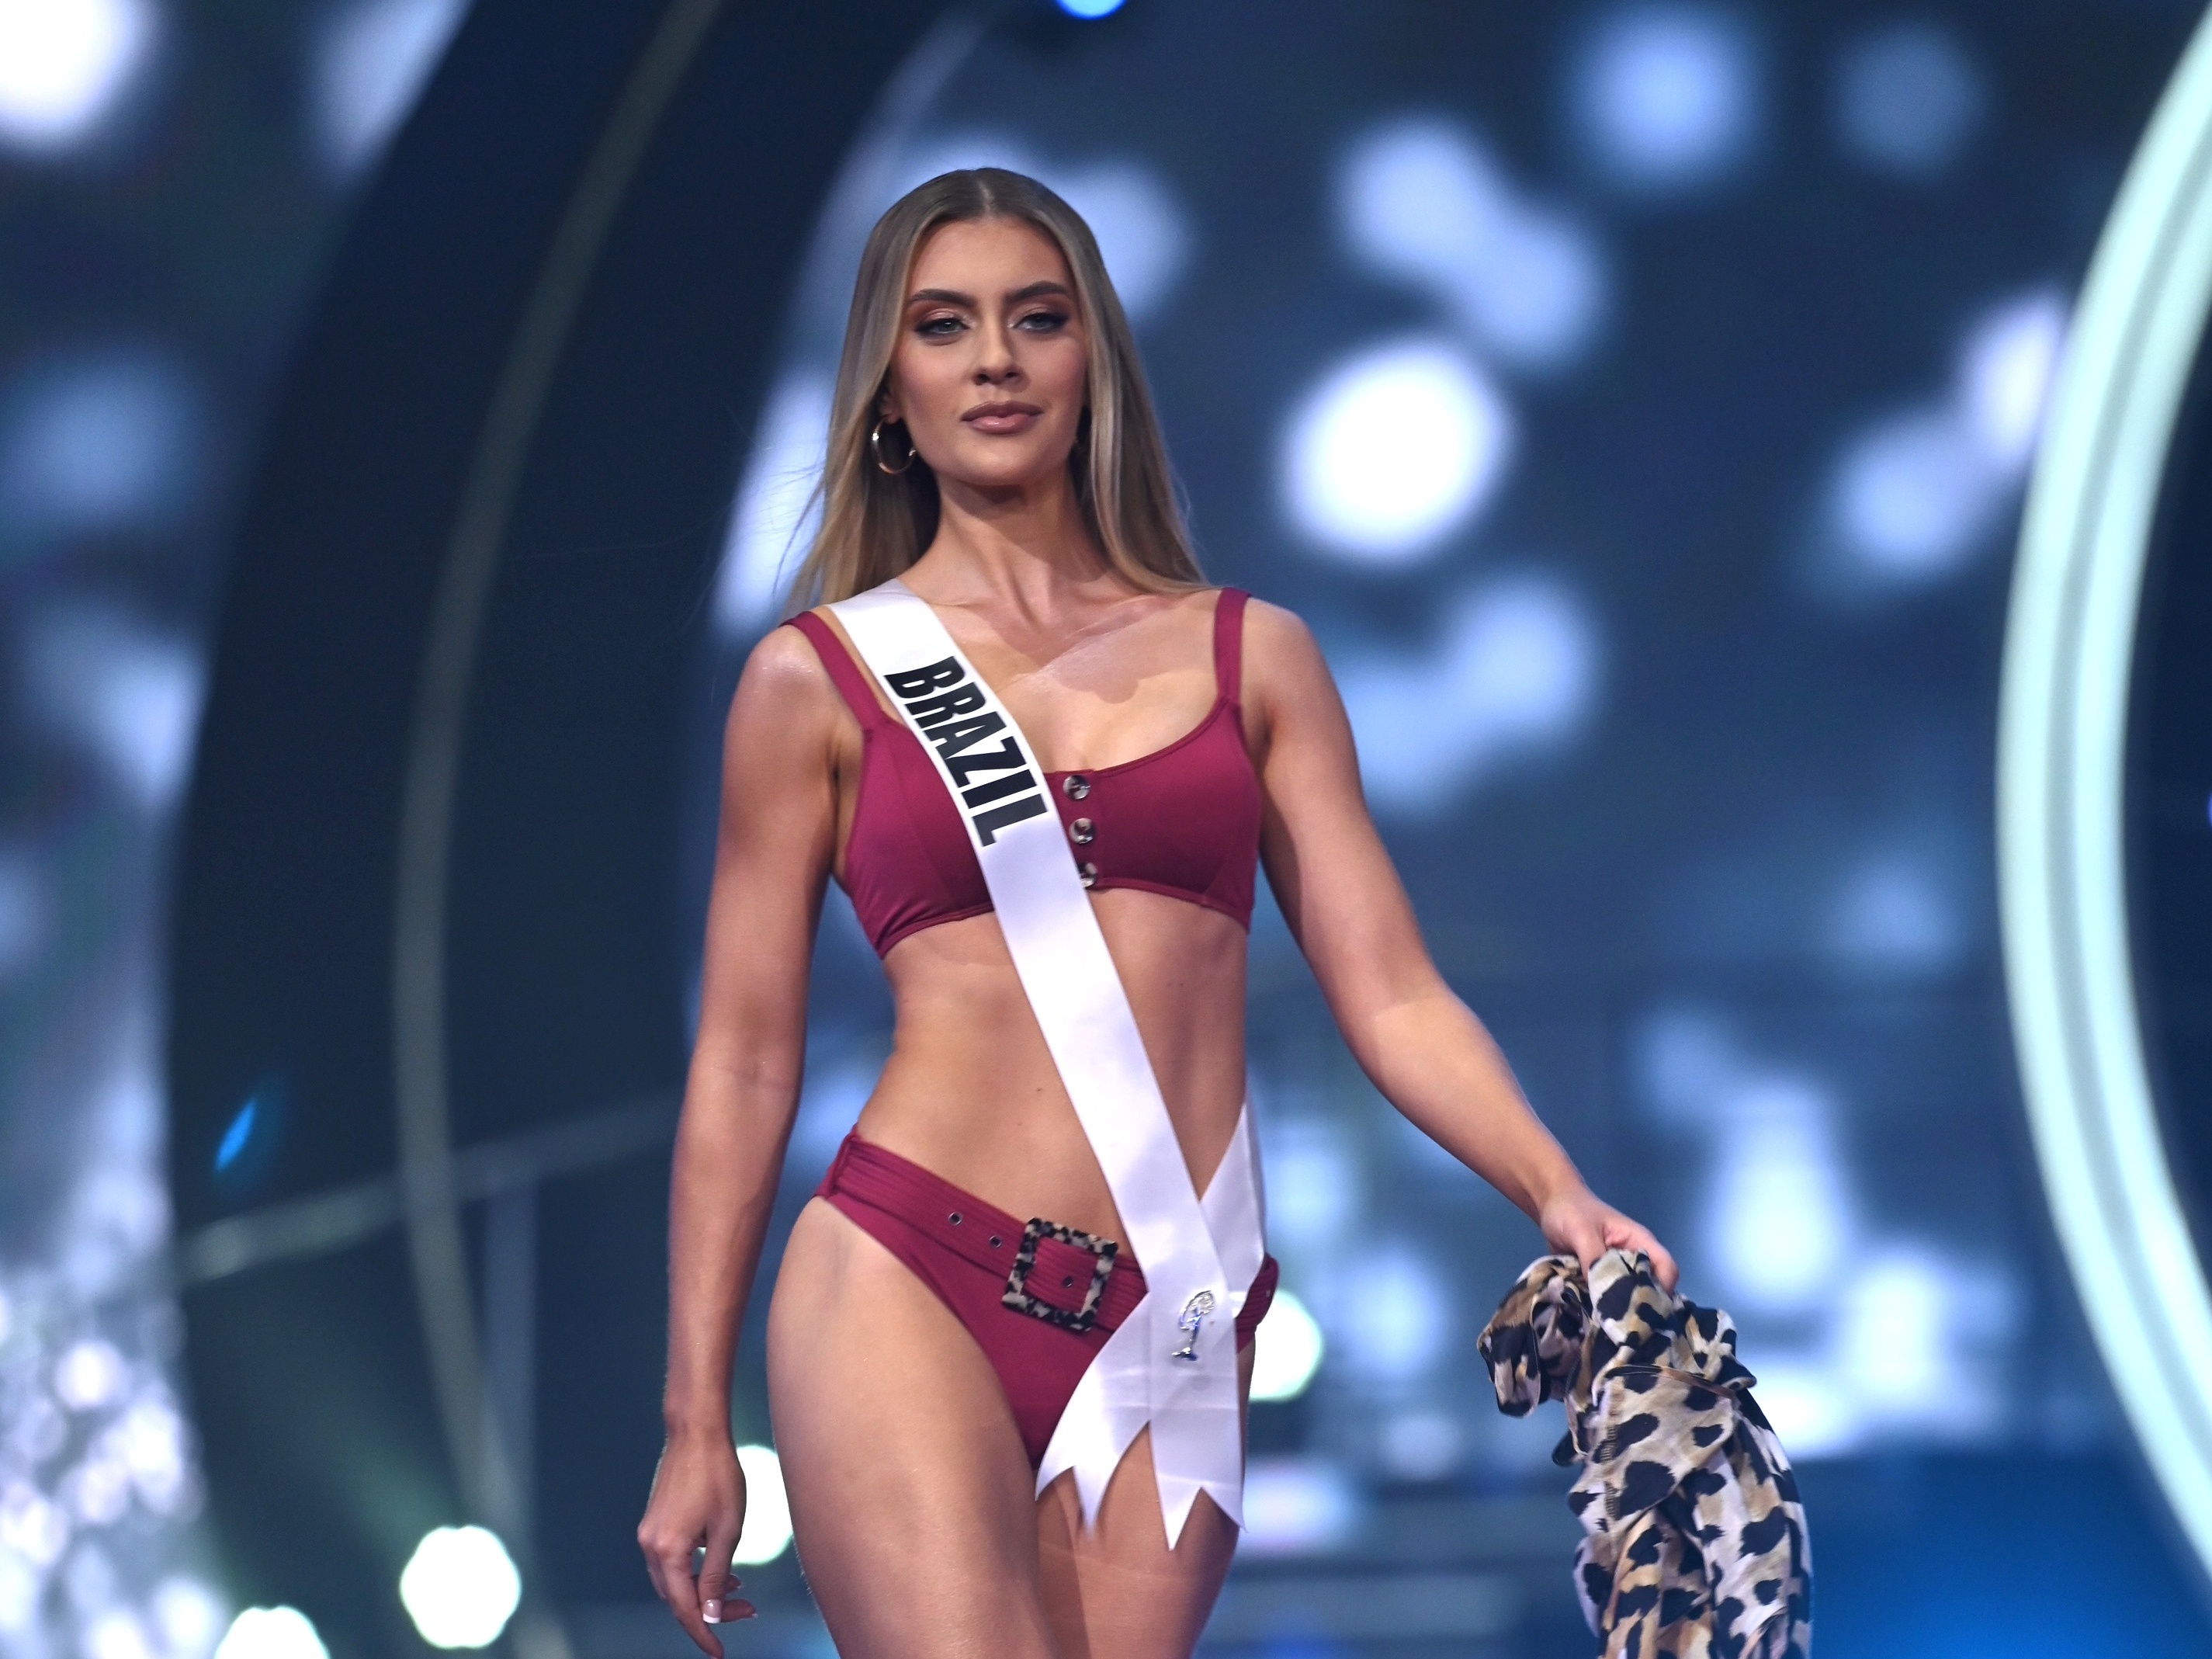 Miss Universo: Com tentativas de mudanças, disputa chega na 70ª edição